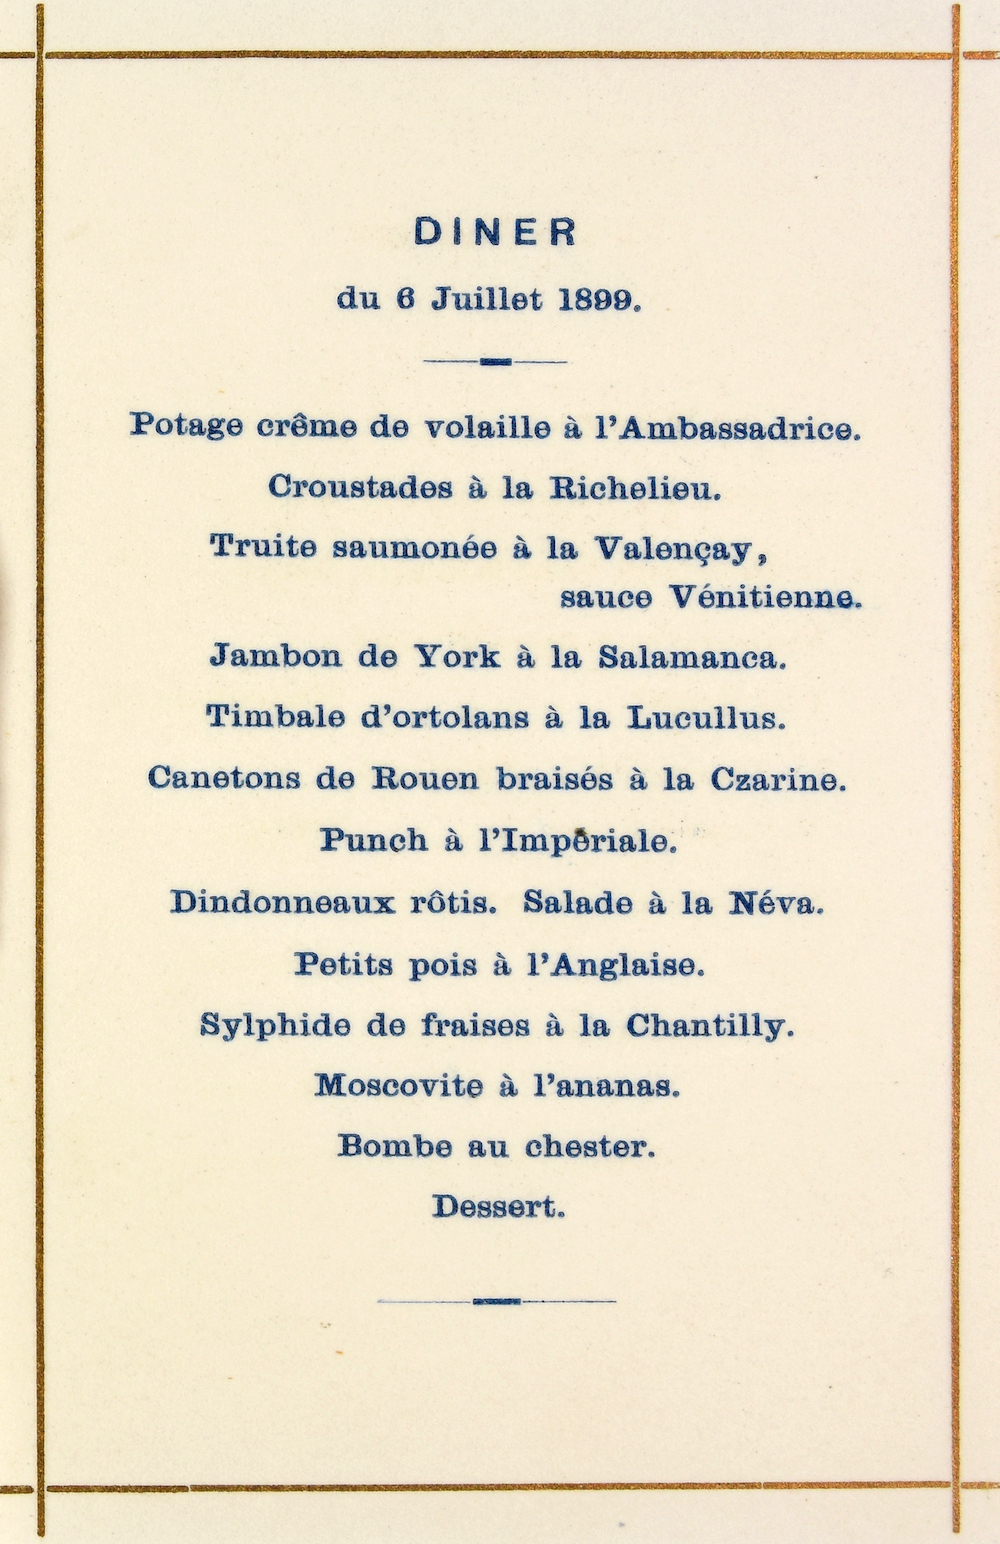 menukaart vredesconferentie 6 juli 1899